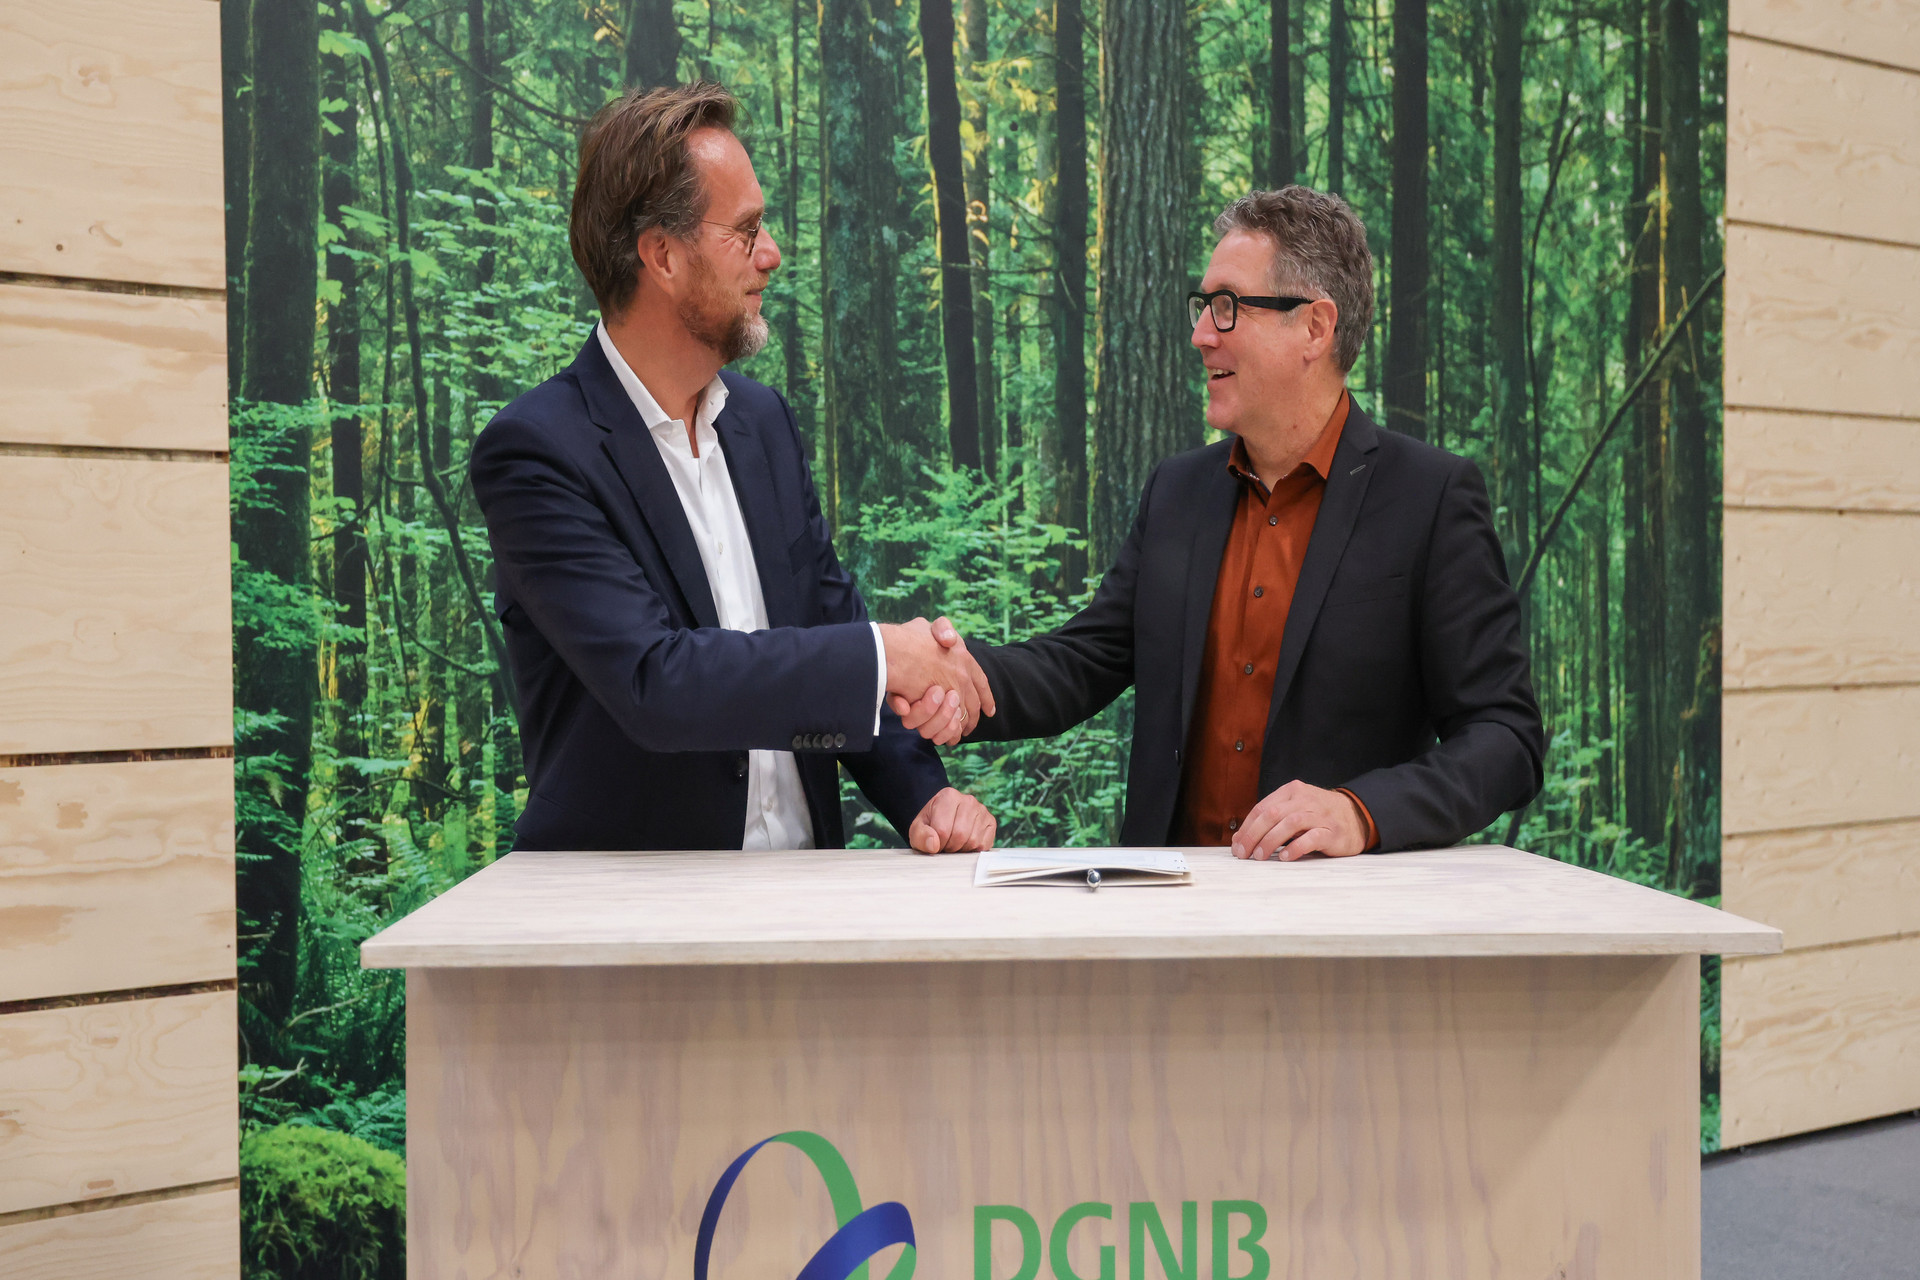 Handschlag zur Kooperationsunterzeichnung der DGNB und der HafenCity Hamburg im Rahmen der Expo Real 2022